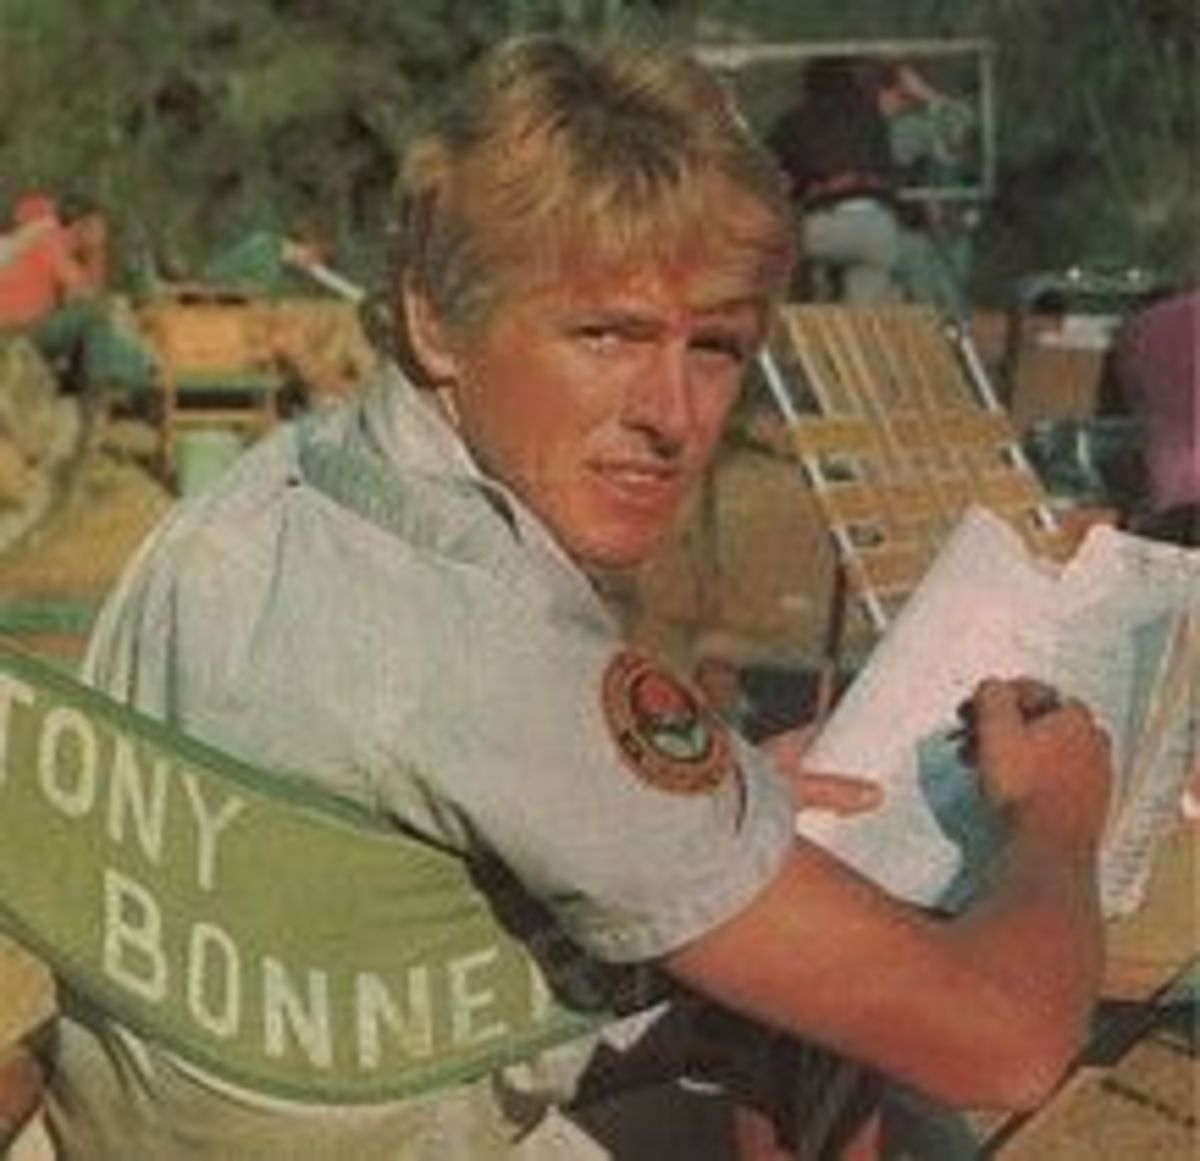 Tony Bonner